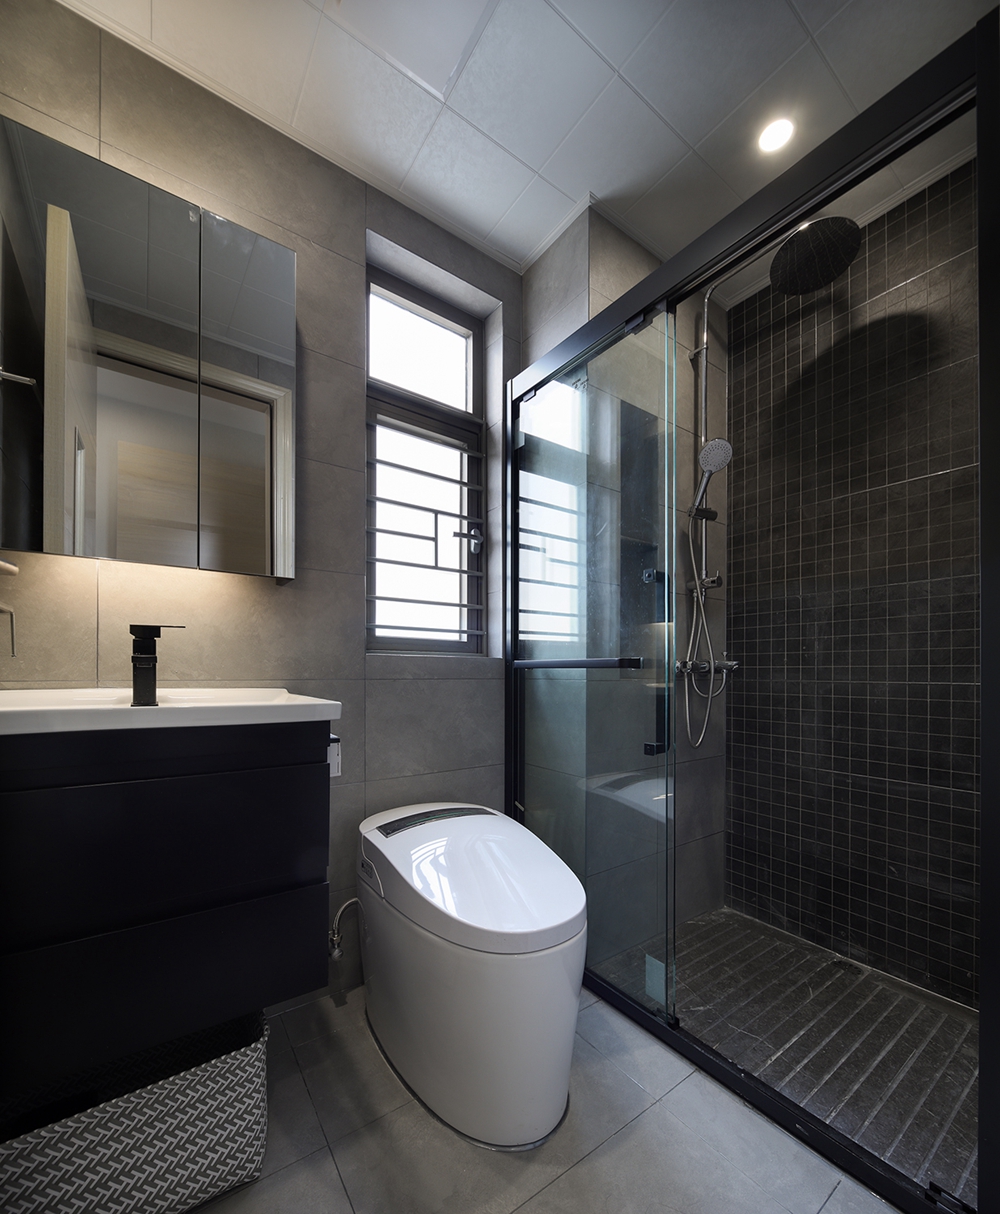 洗手间以黑白灰色调为主，用当下流行的干湿分离设计来体现空间的秩序。